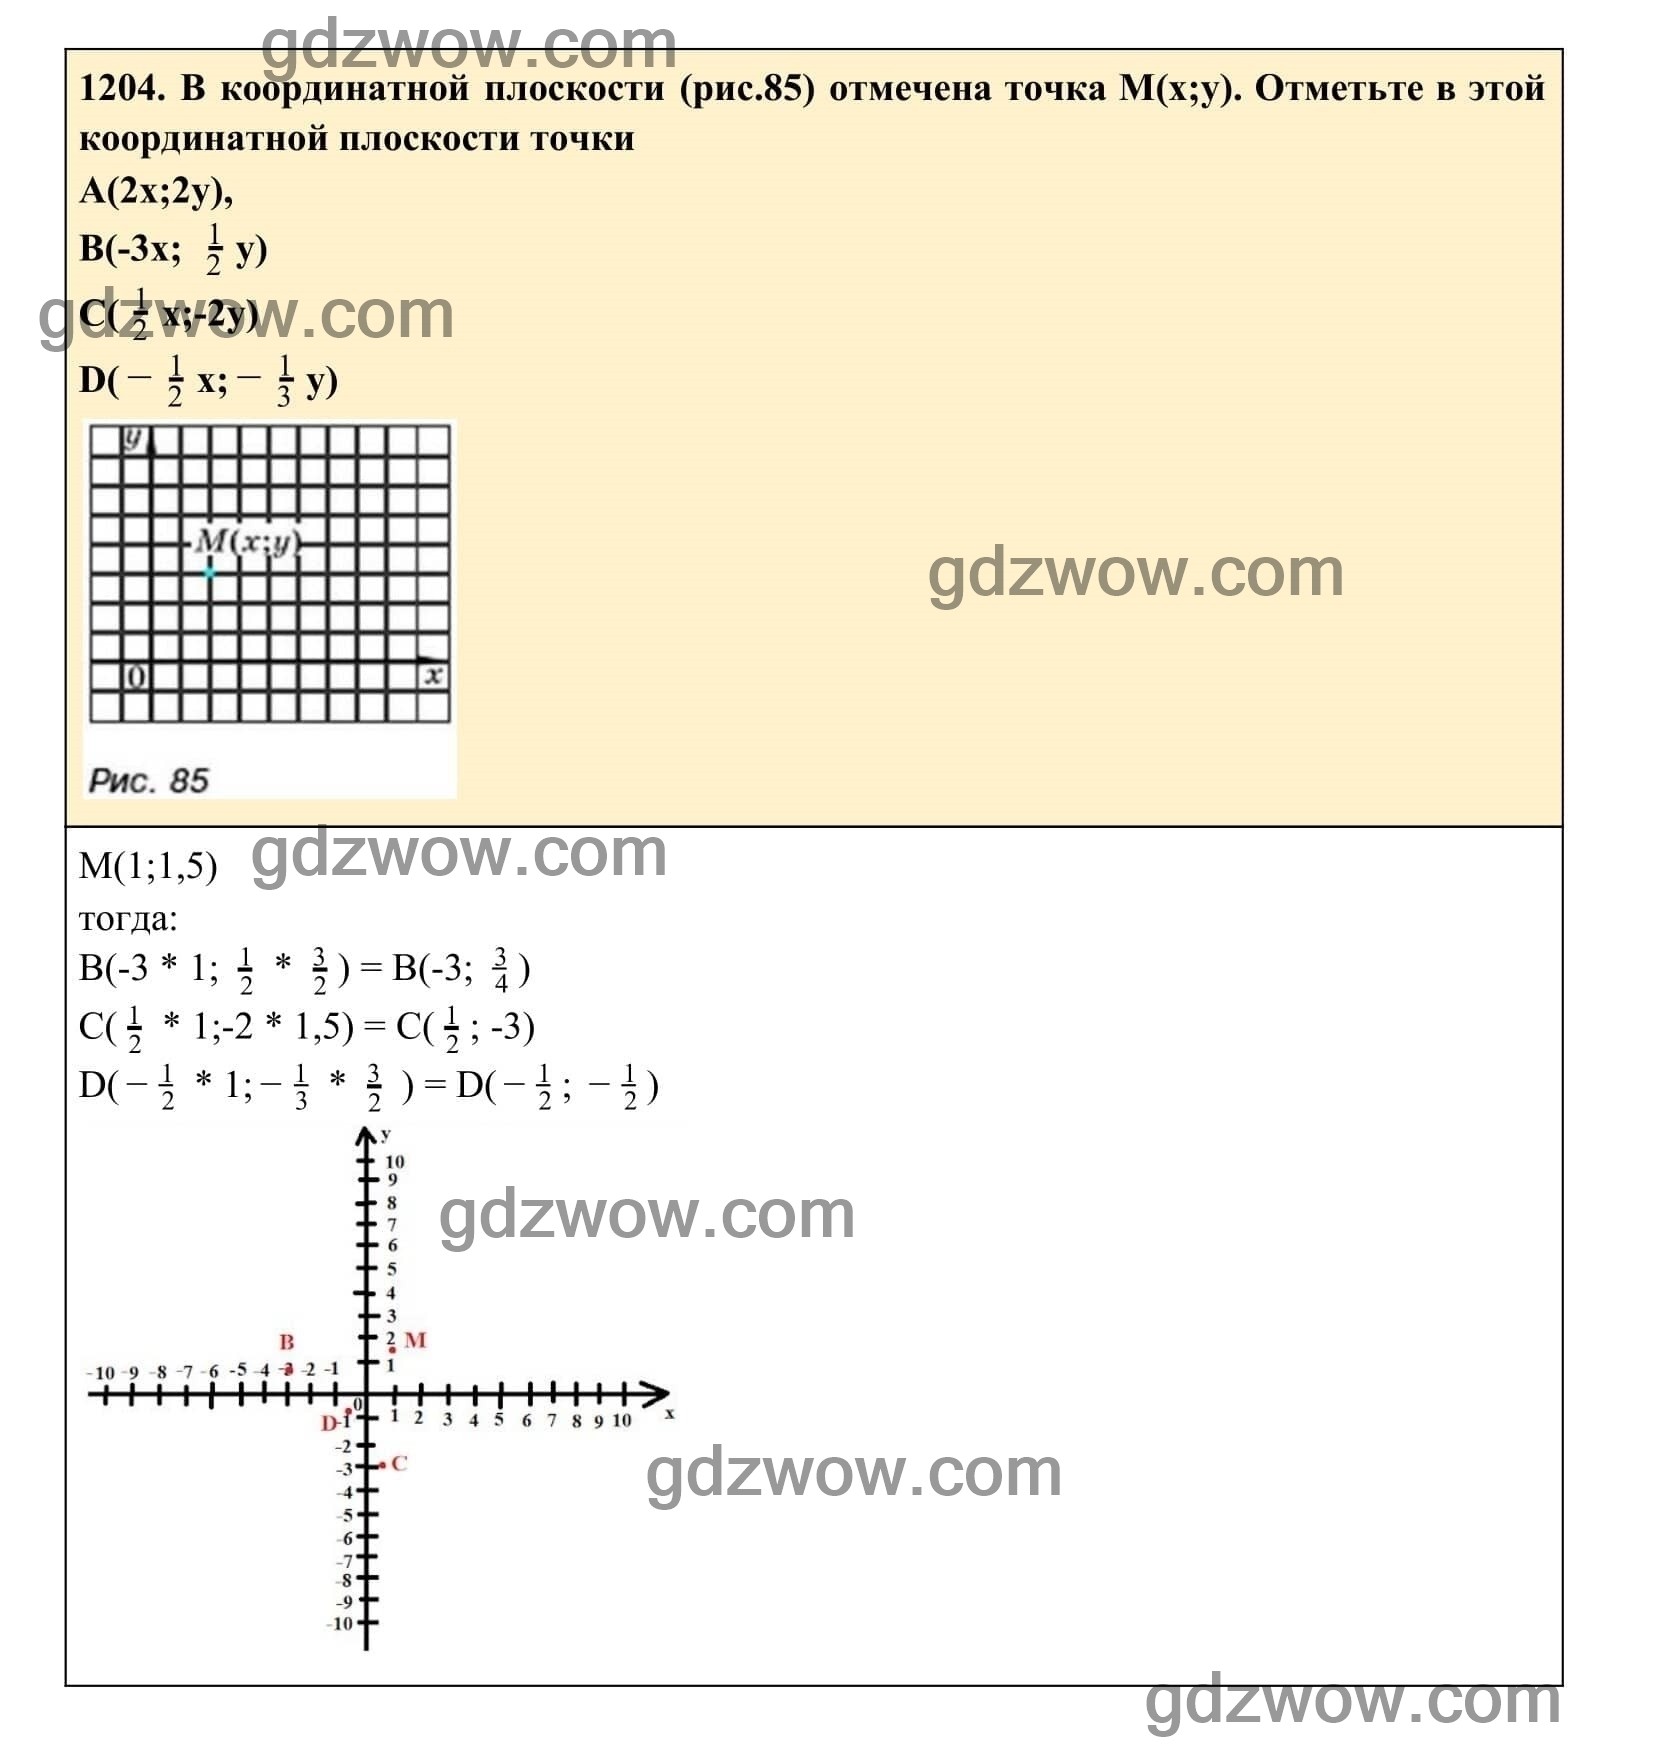 Упражнение 1204 - ГДЗ по Алгебре 7 класс Учебник Макарычев (решебник) - GDZwow